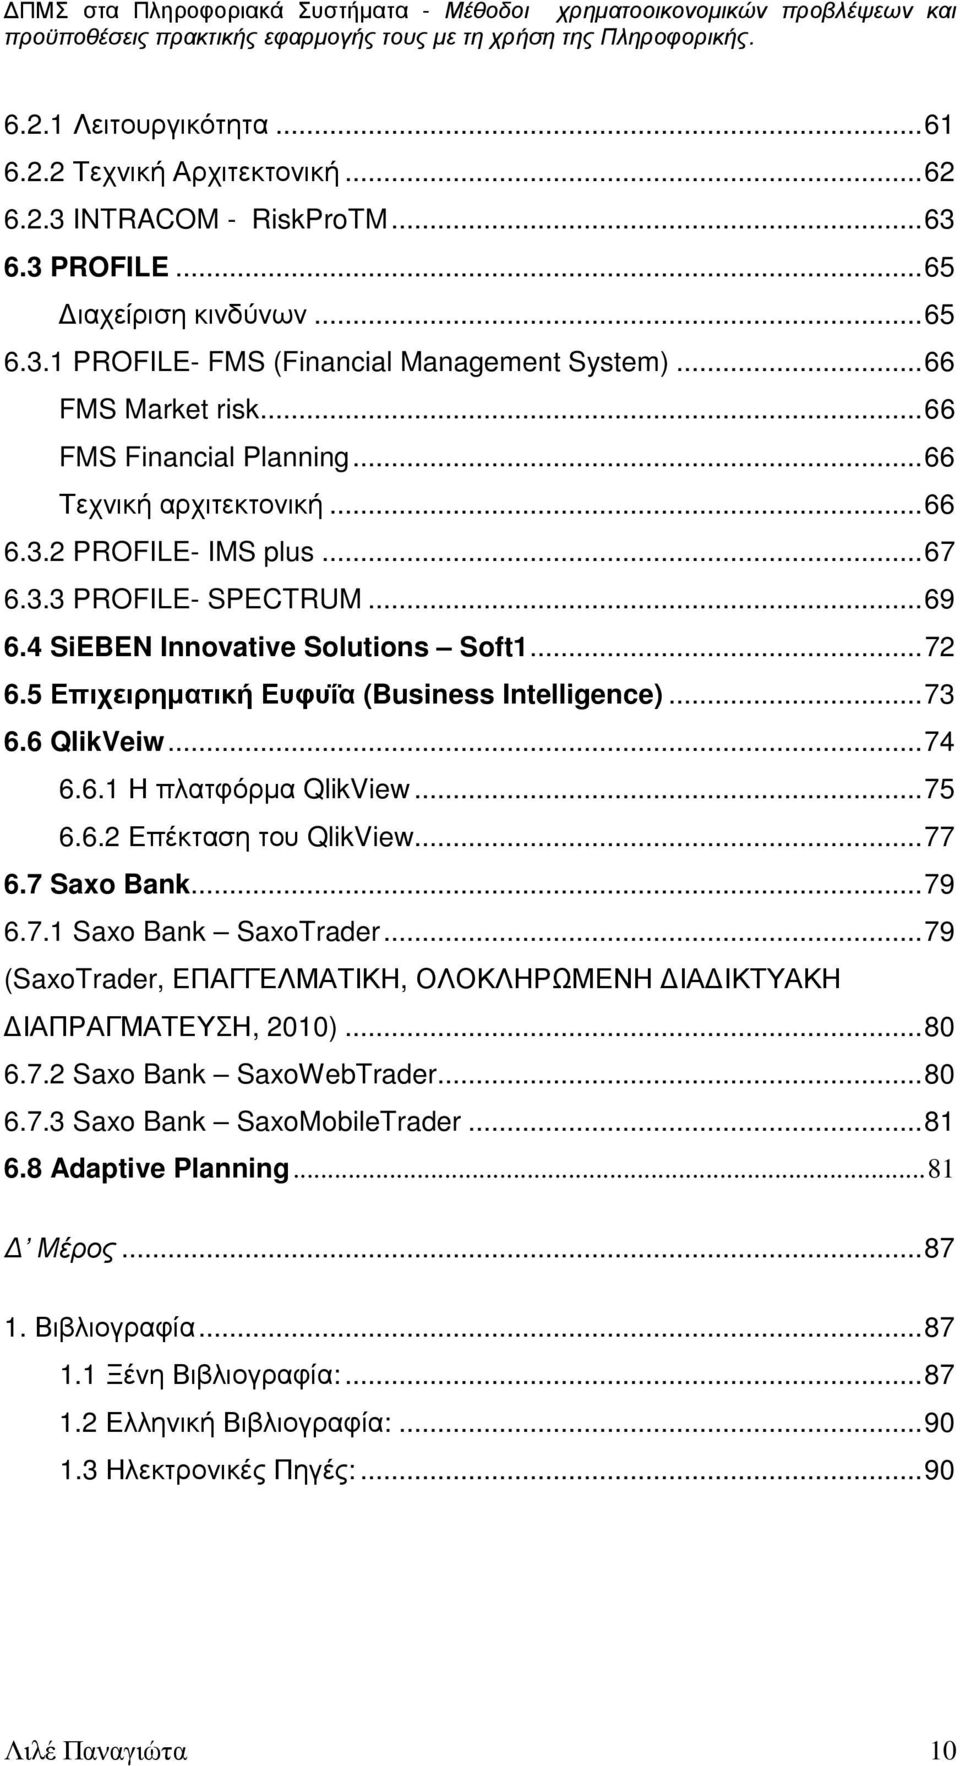 5 Επιχειρηµατική Ευφυΐα (Business Intelligence)...73 6.6 QlikVeiw...74 6.6.1 Η πλατφόρµα QlikView...75 6.6.2 Επέκταση του QlikView...77 6.7 Saxo Bank...79 6.7.1 Saxo Bank SaxoTrader.